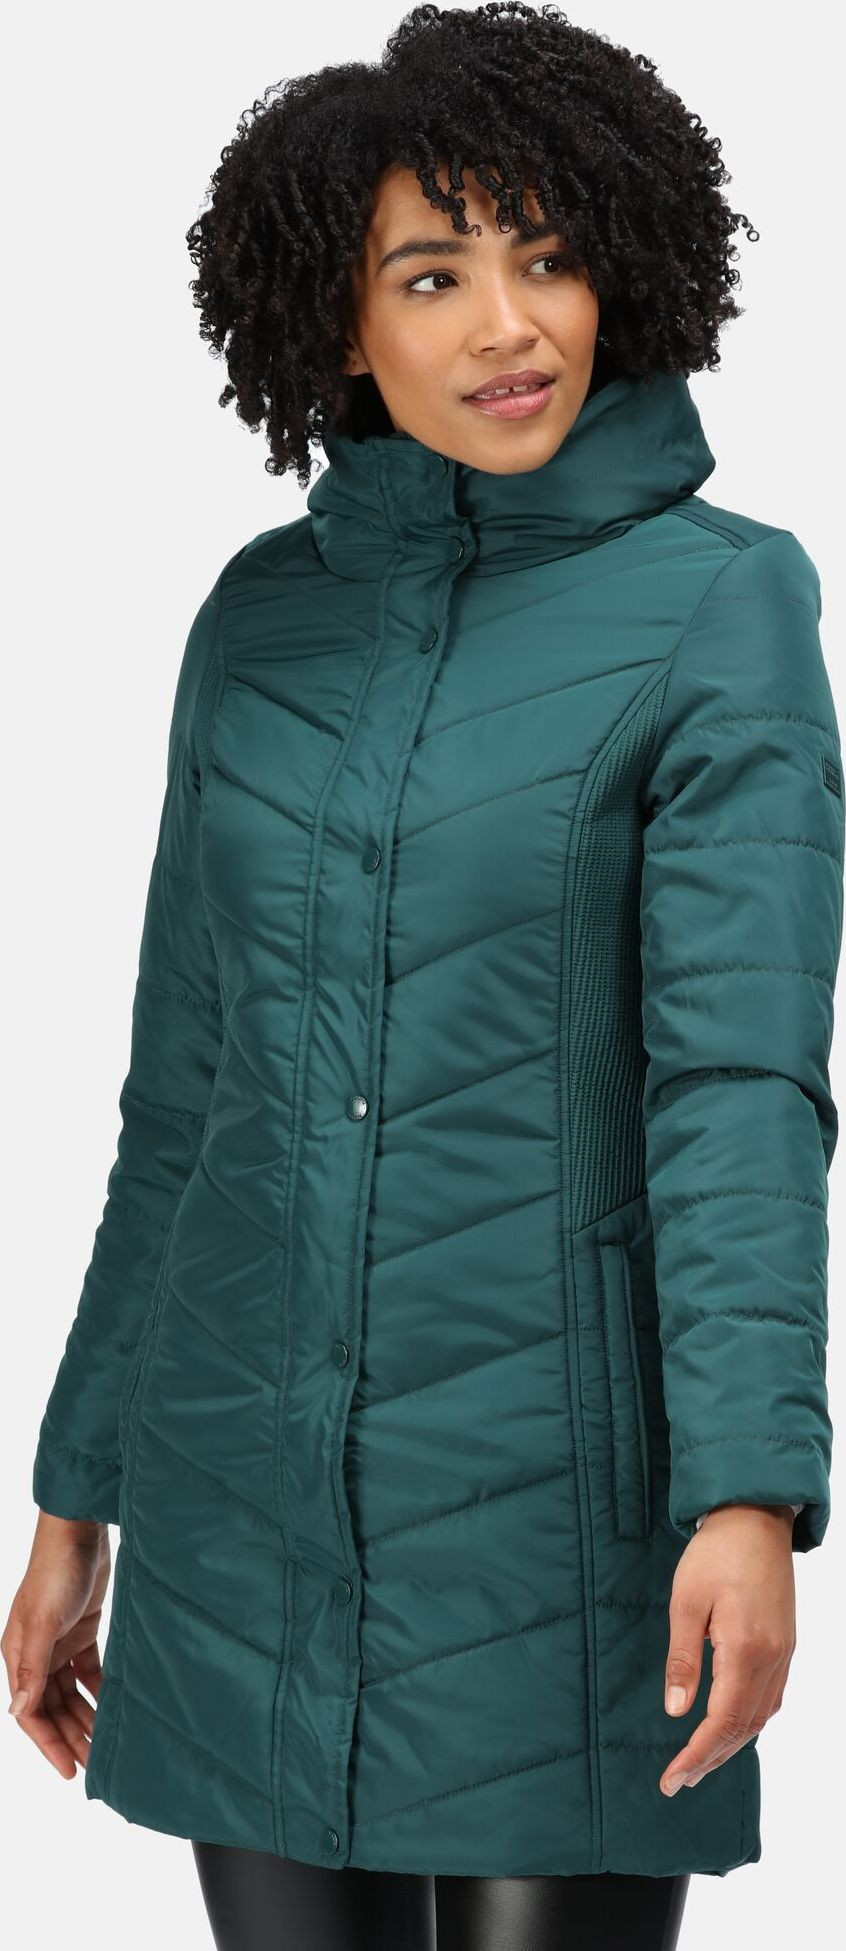 Dámský zimní kabát Regatta RWN186 Parthenia 3EB zelený - Regatta Velikost: XS-34, Barvy: Zelená